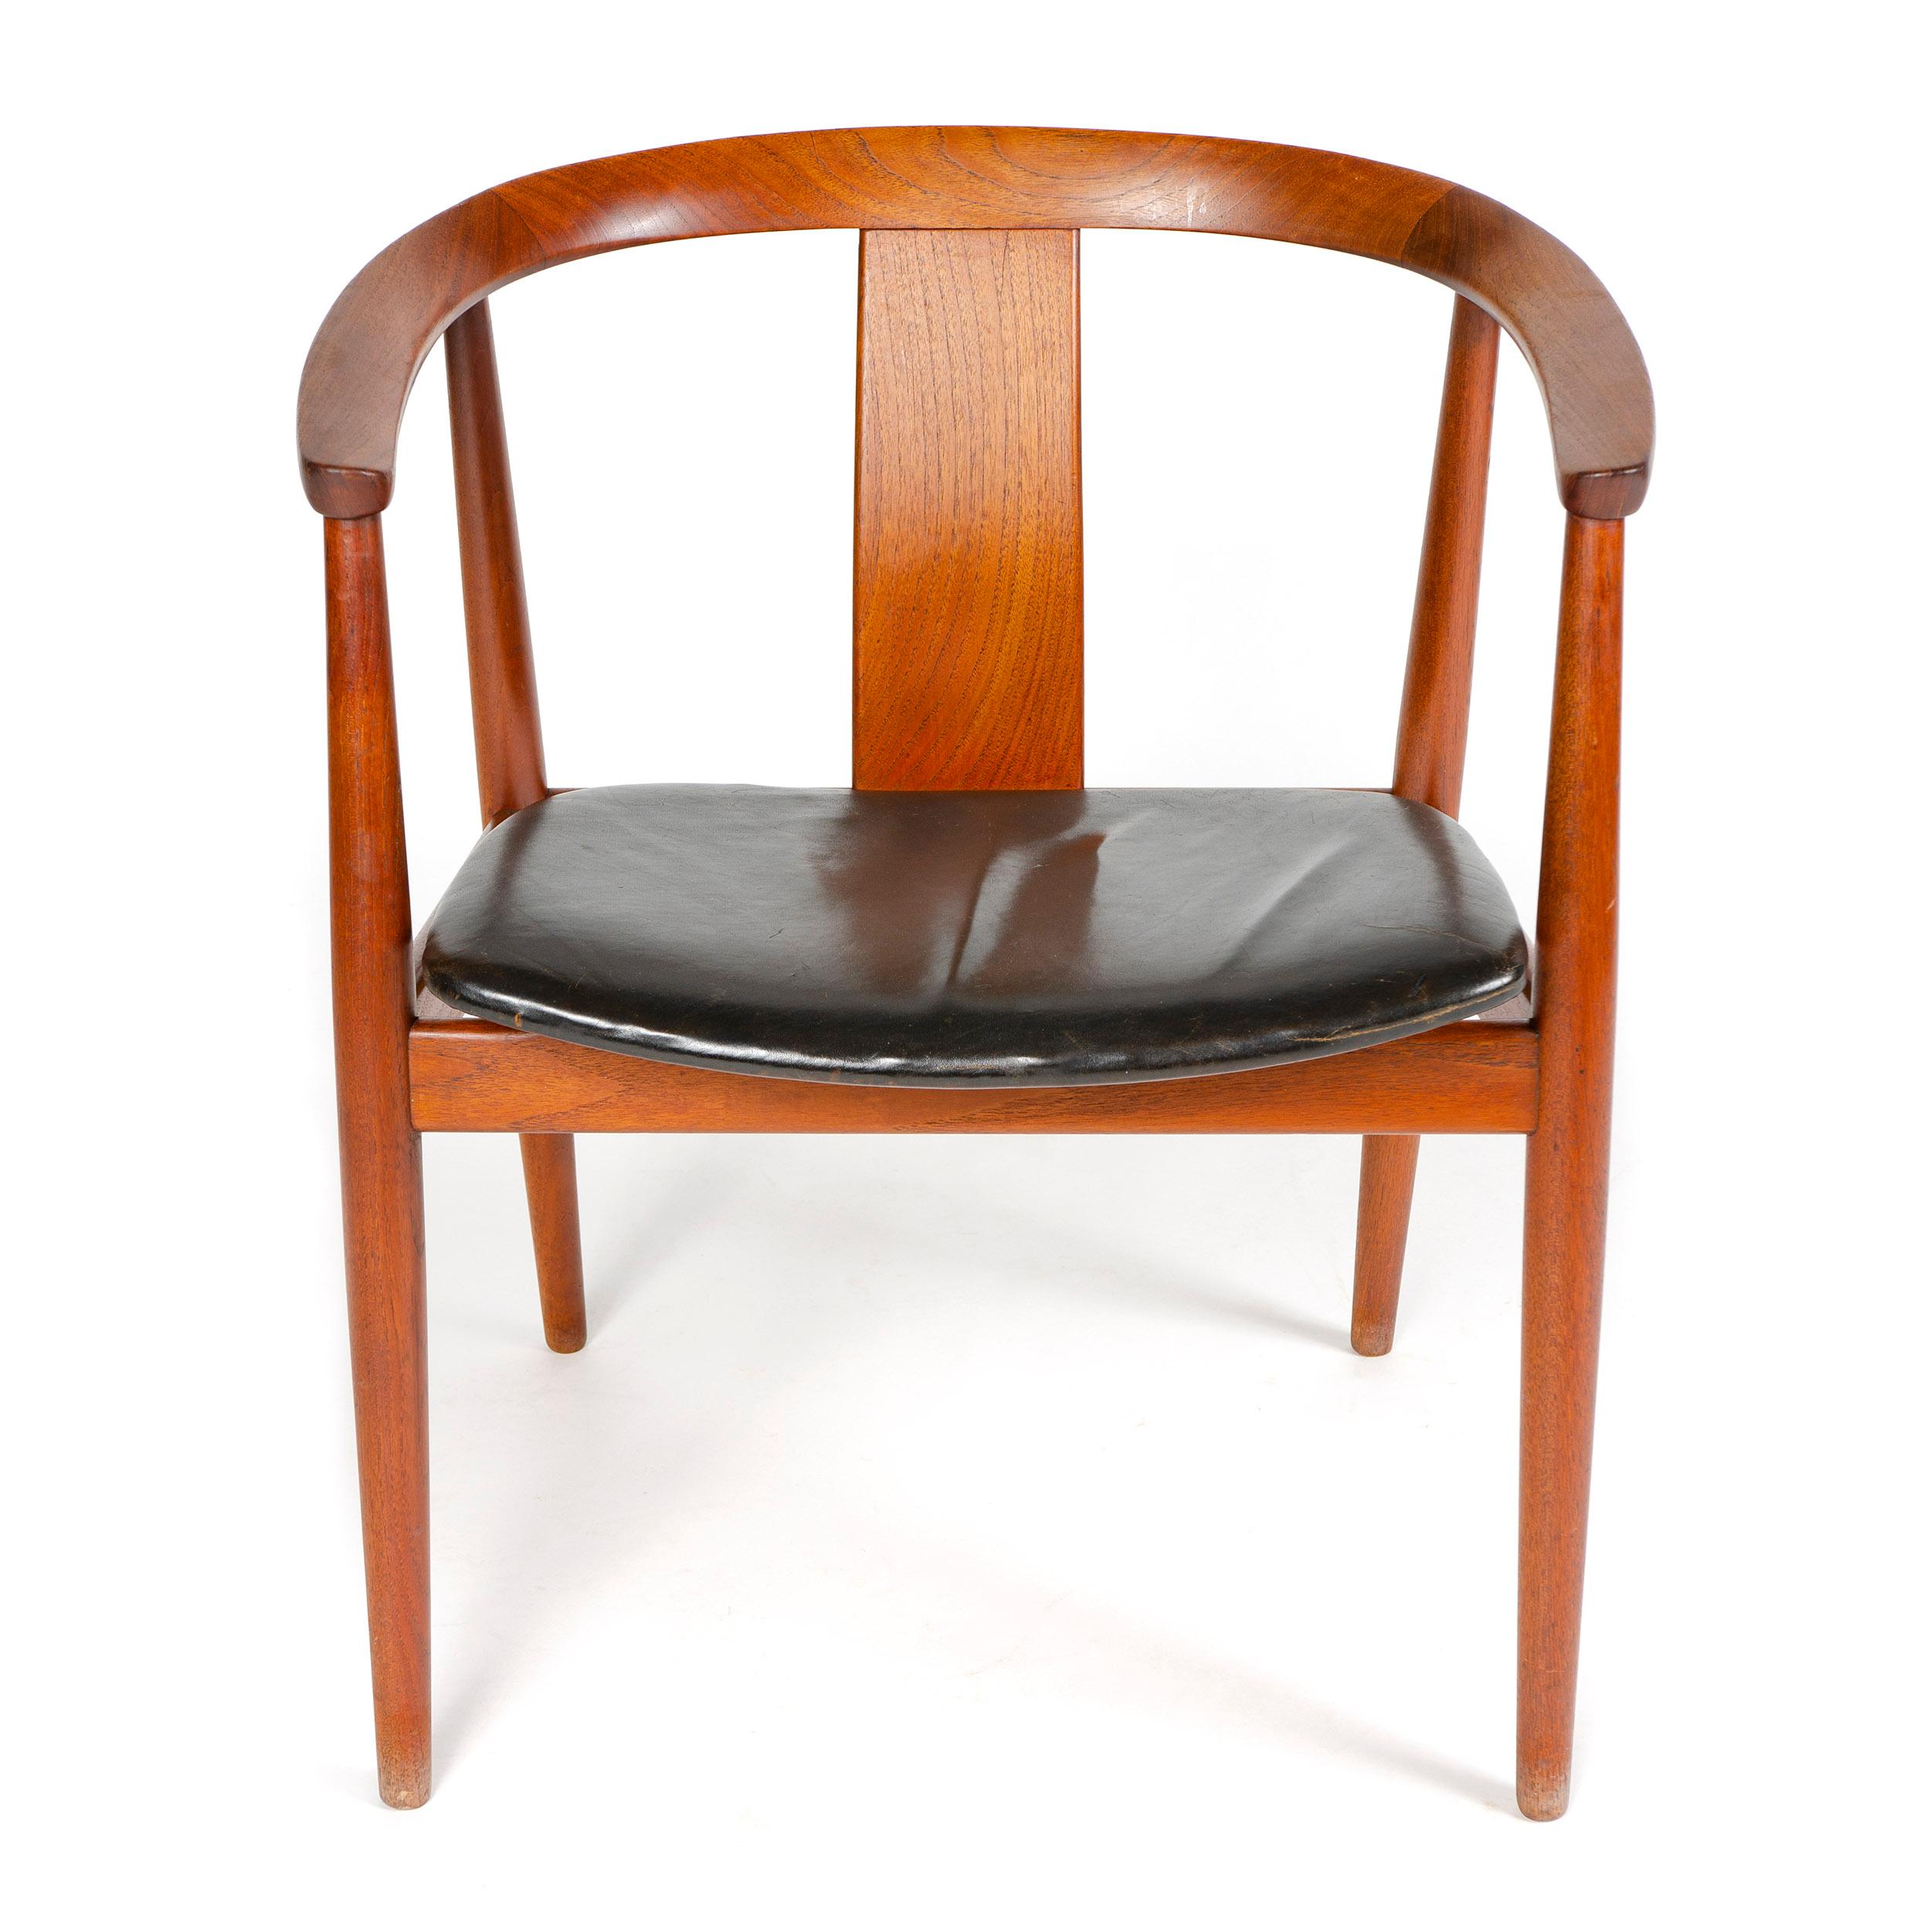 Ein Mid-Century Modern Teakholz Beistellstuhl / Esszimmerstuhl entworfen von Tove & Edvard Kindt-Larsen. Das Design zeichnet sich durch eine breite Leiste in der Mitte der Rückenlehne und einen mit Leder gepolsterten Sitz aus. Der Stuhl trägt auf